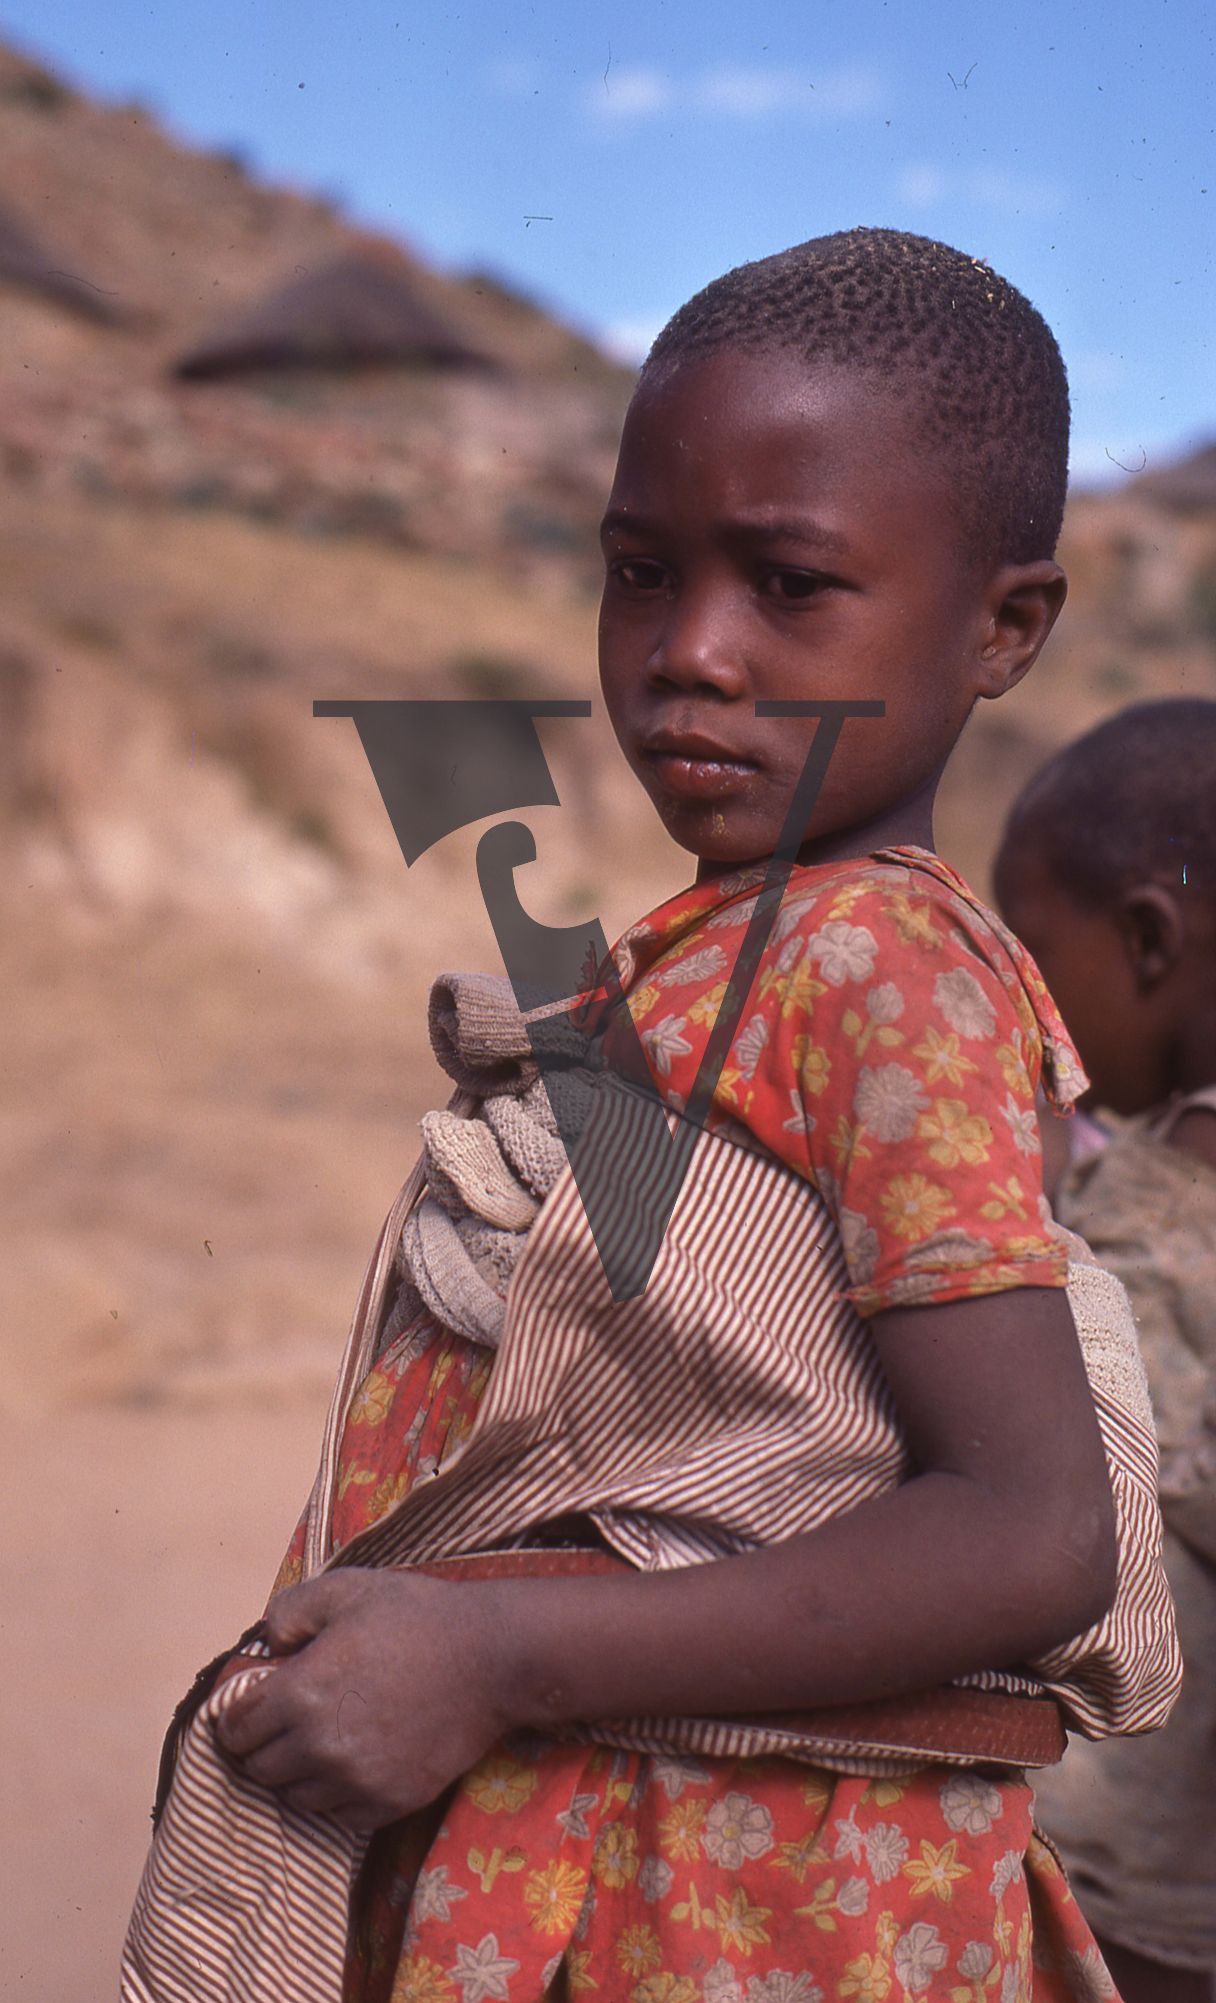 Lesotho, Handspun mohair farming community, girl looks on, portrait.